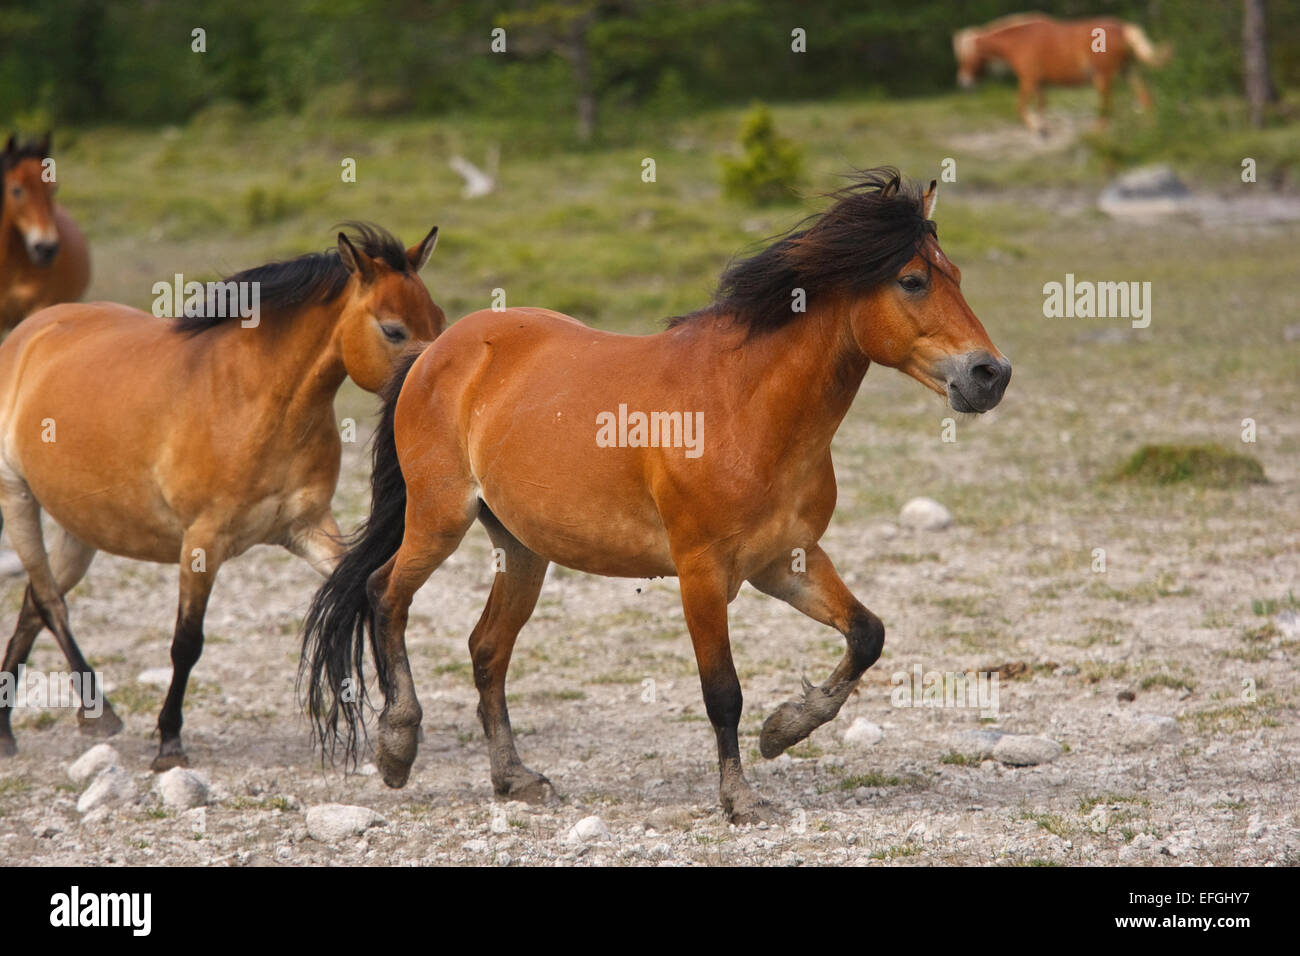 Ein halb-wilden Pferd, Gotlands Russ (Equus Caballus). Die Pferde leben in der wilden fast das ganze Jahr, aber sind nicht wahr Wildpferde Stockfoto